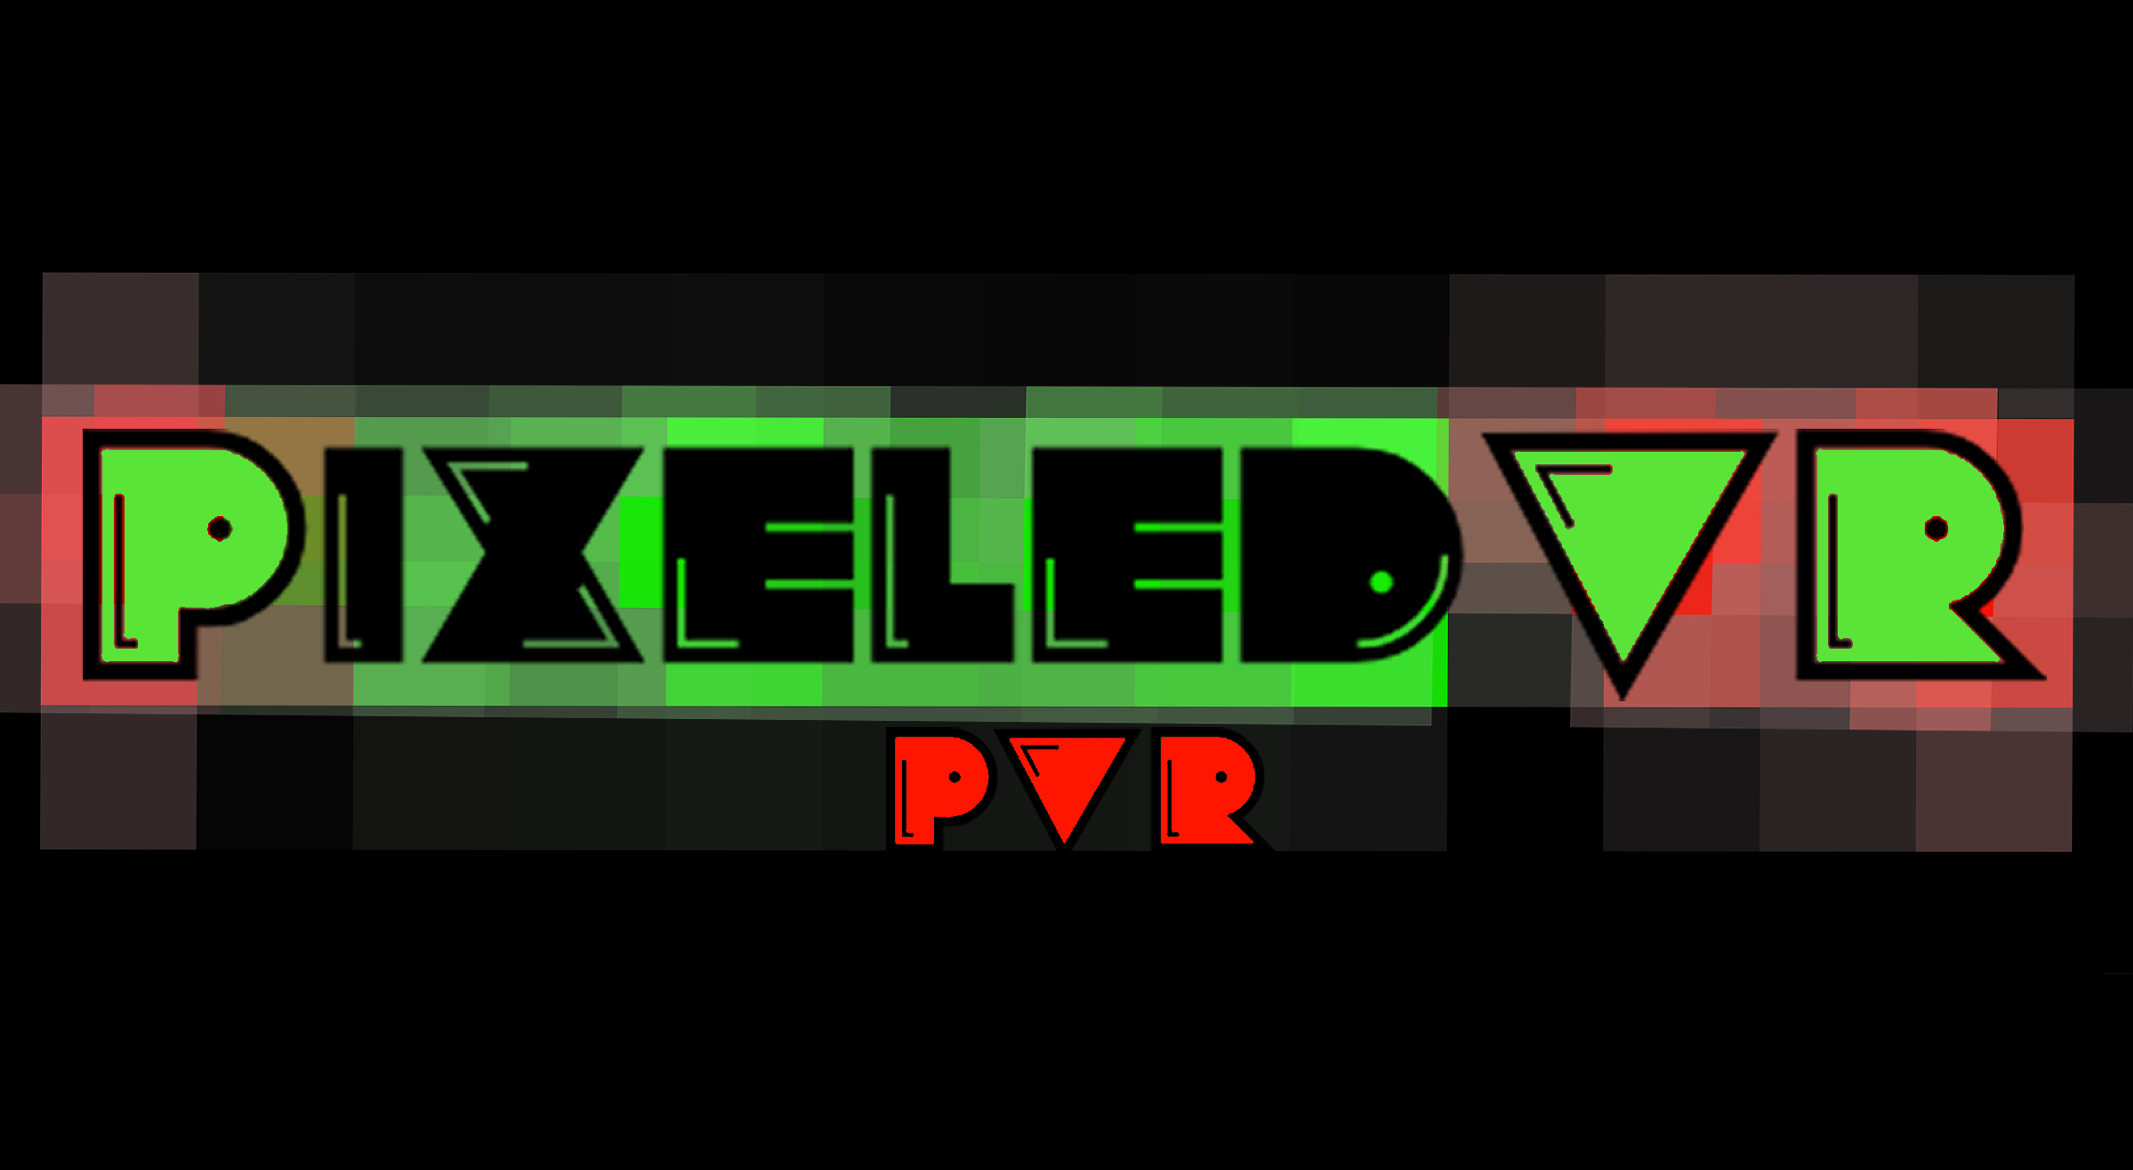 PixeledVR